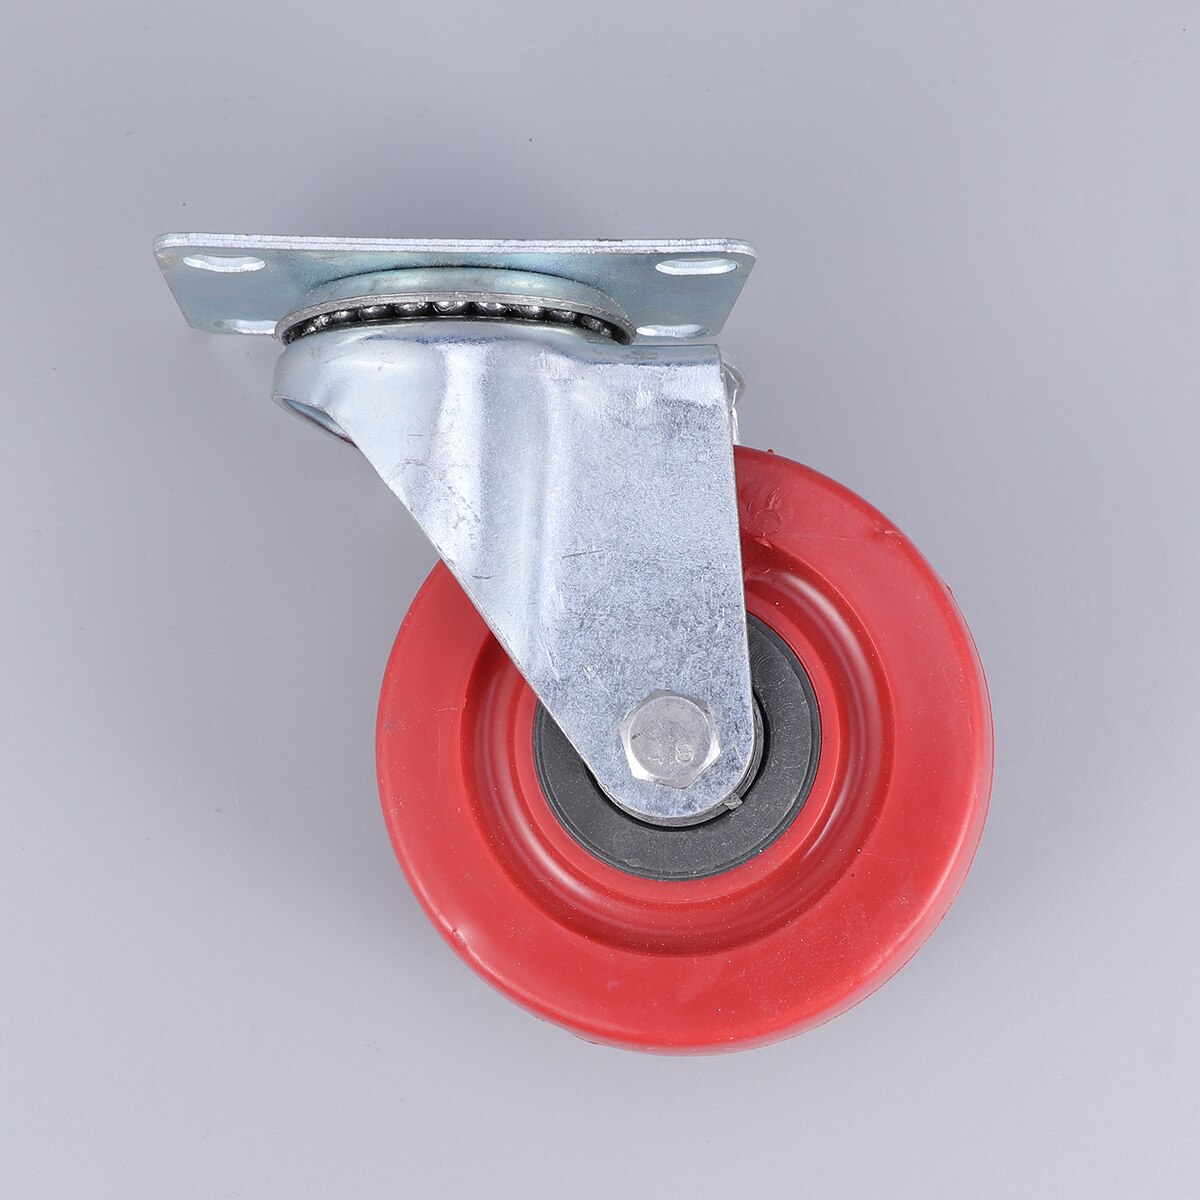 1 stk 3 tommer ,4 tommer  ,5 tommer jujube rød anti-vikling universalhjul dobbeltakse hjul med styrebremsning (rød + sølv ) a30